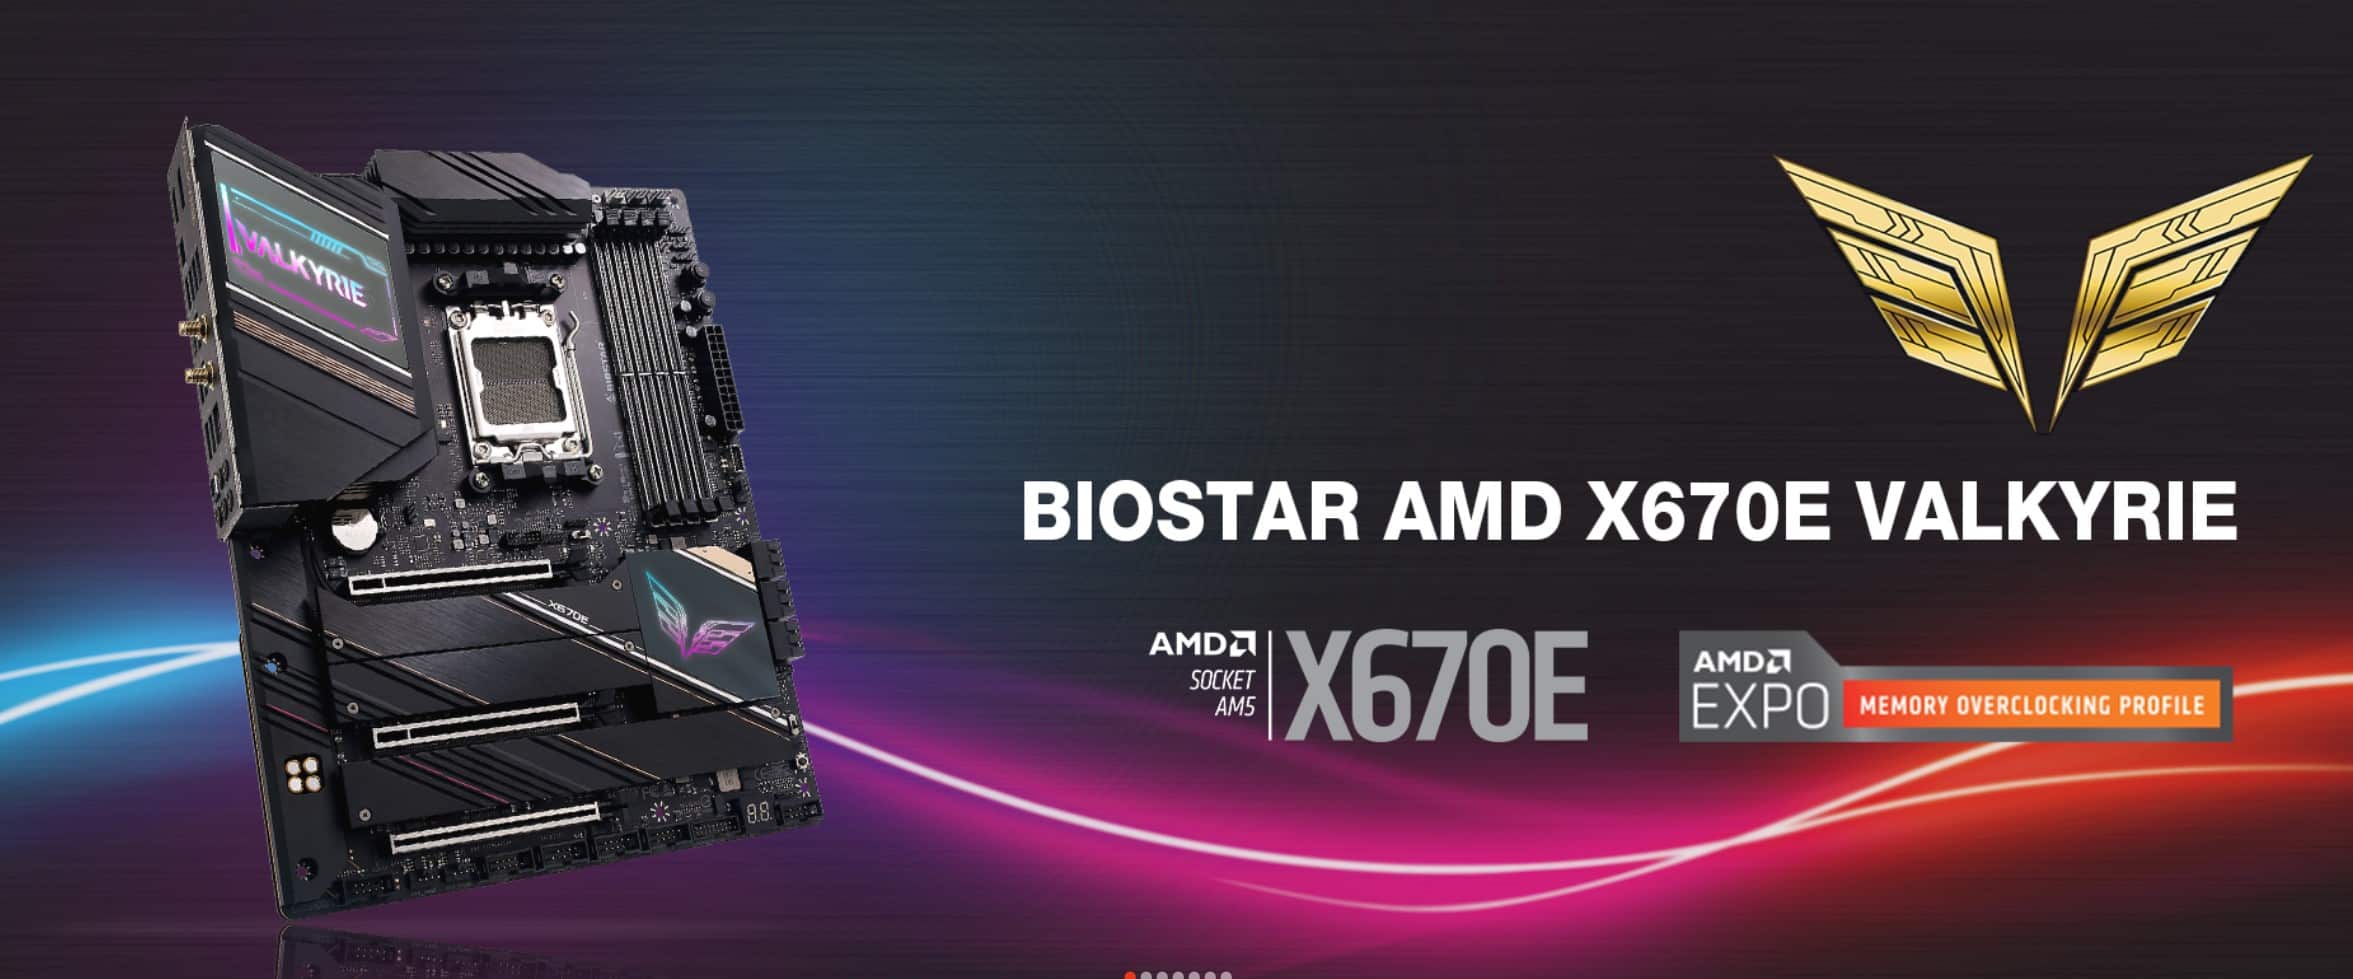 BIOSTAR presenta el nuevo motherboard X670E VALKYRIE ATX diseñado en base al chipset AMD X670, GamersRD